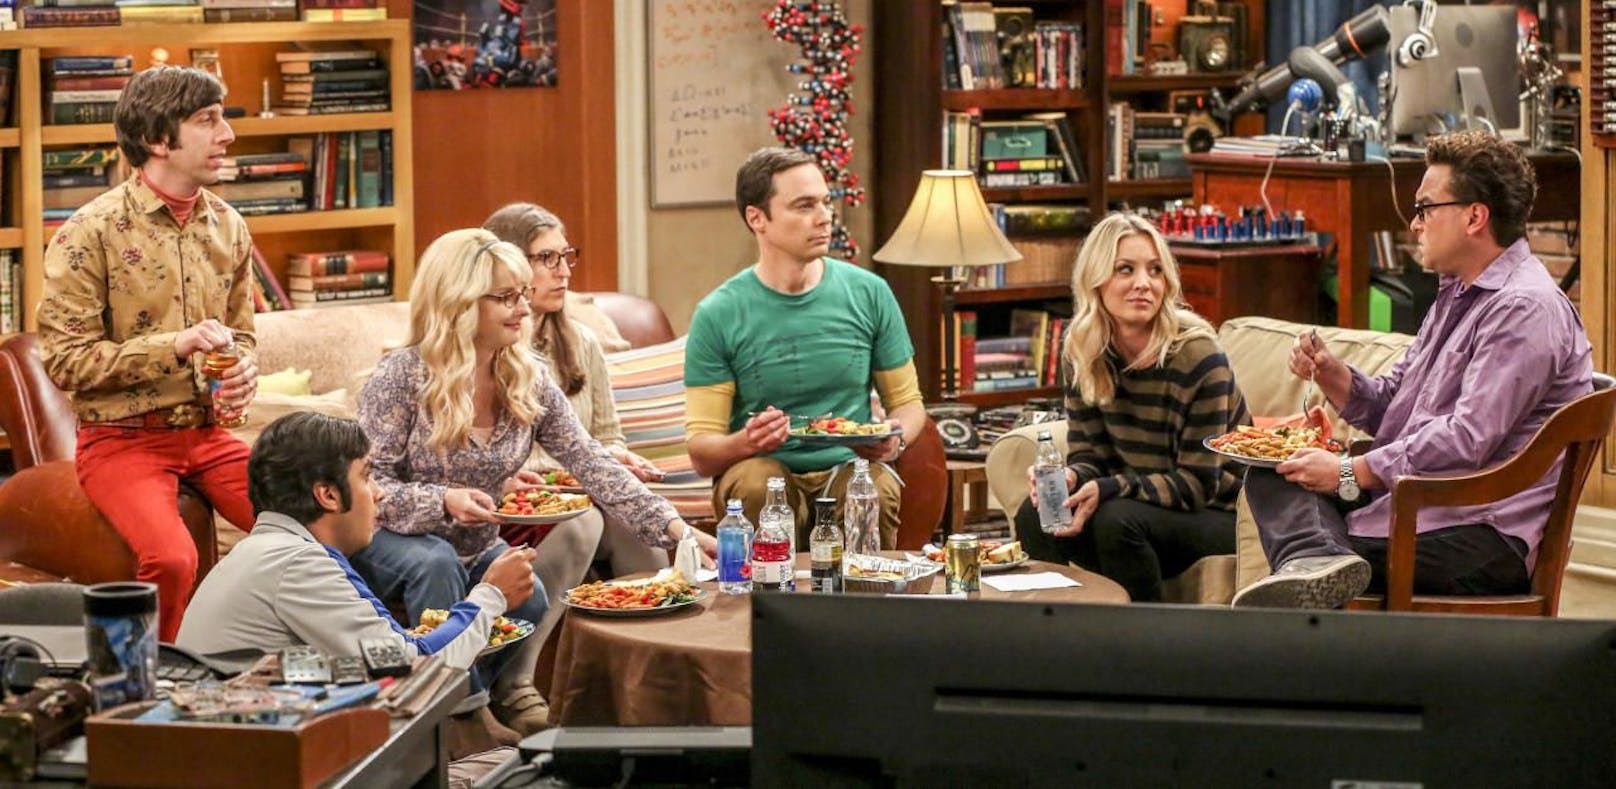 Der weltweite Durchbruch gelang Cuoco als sexy Blondine Penny in der Serie "The Big Bang Theory".